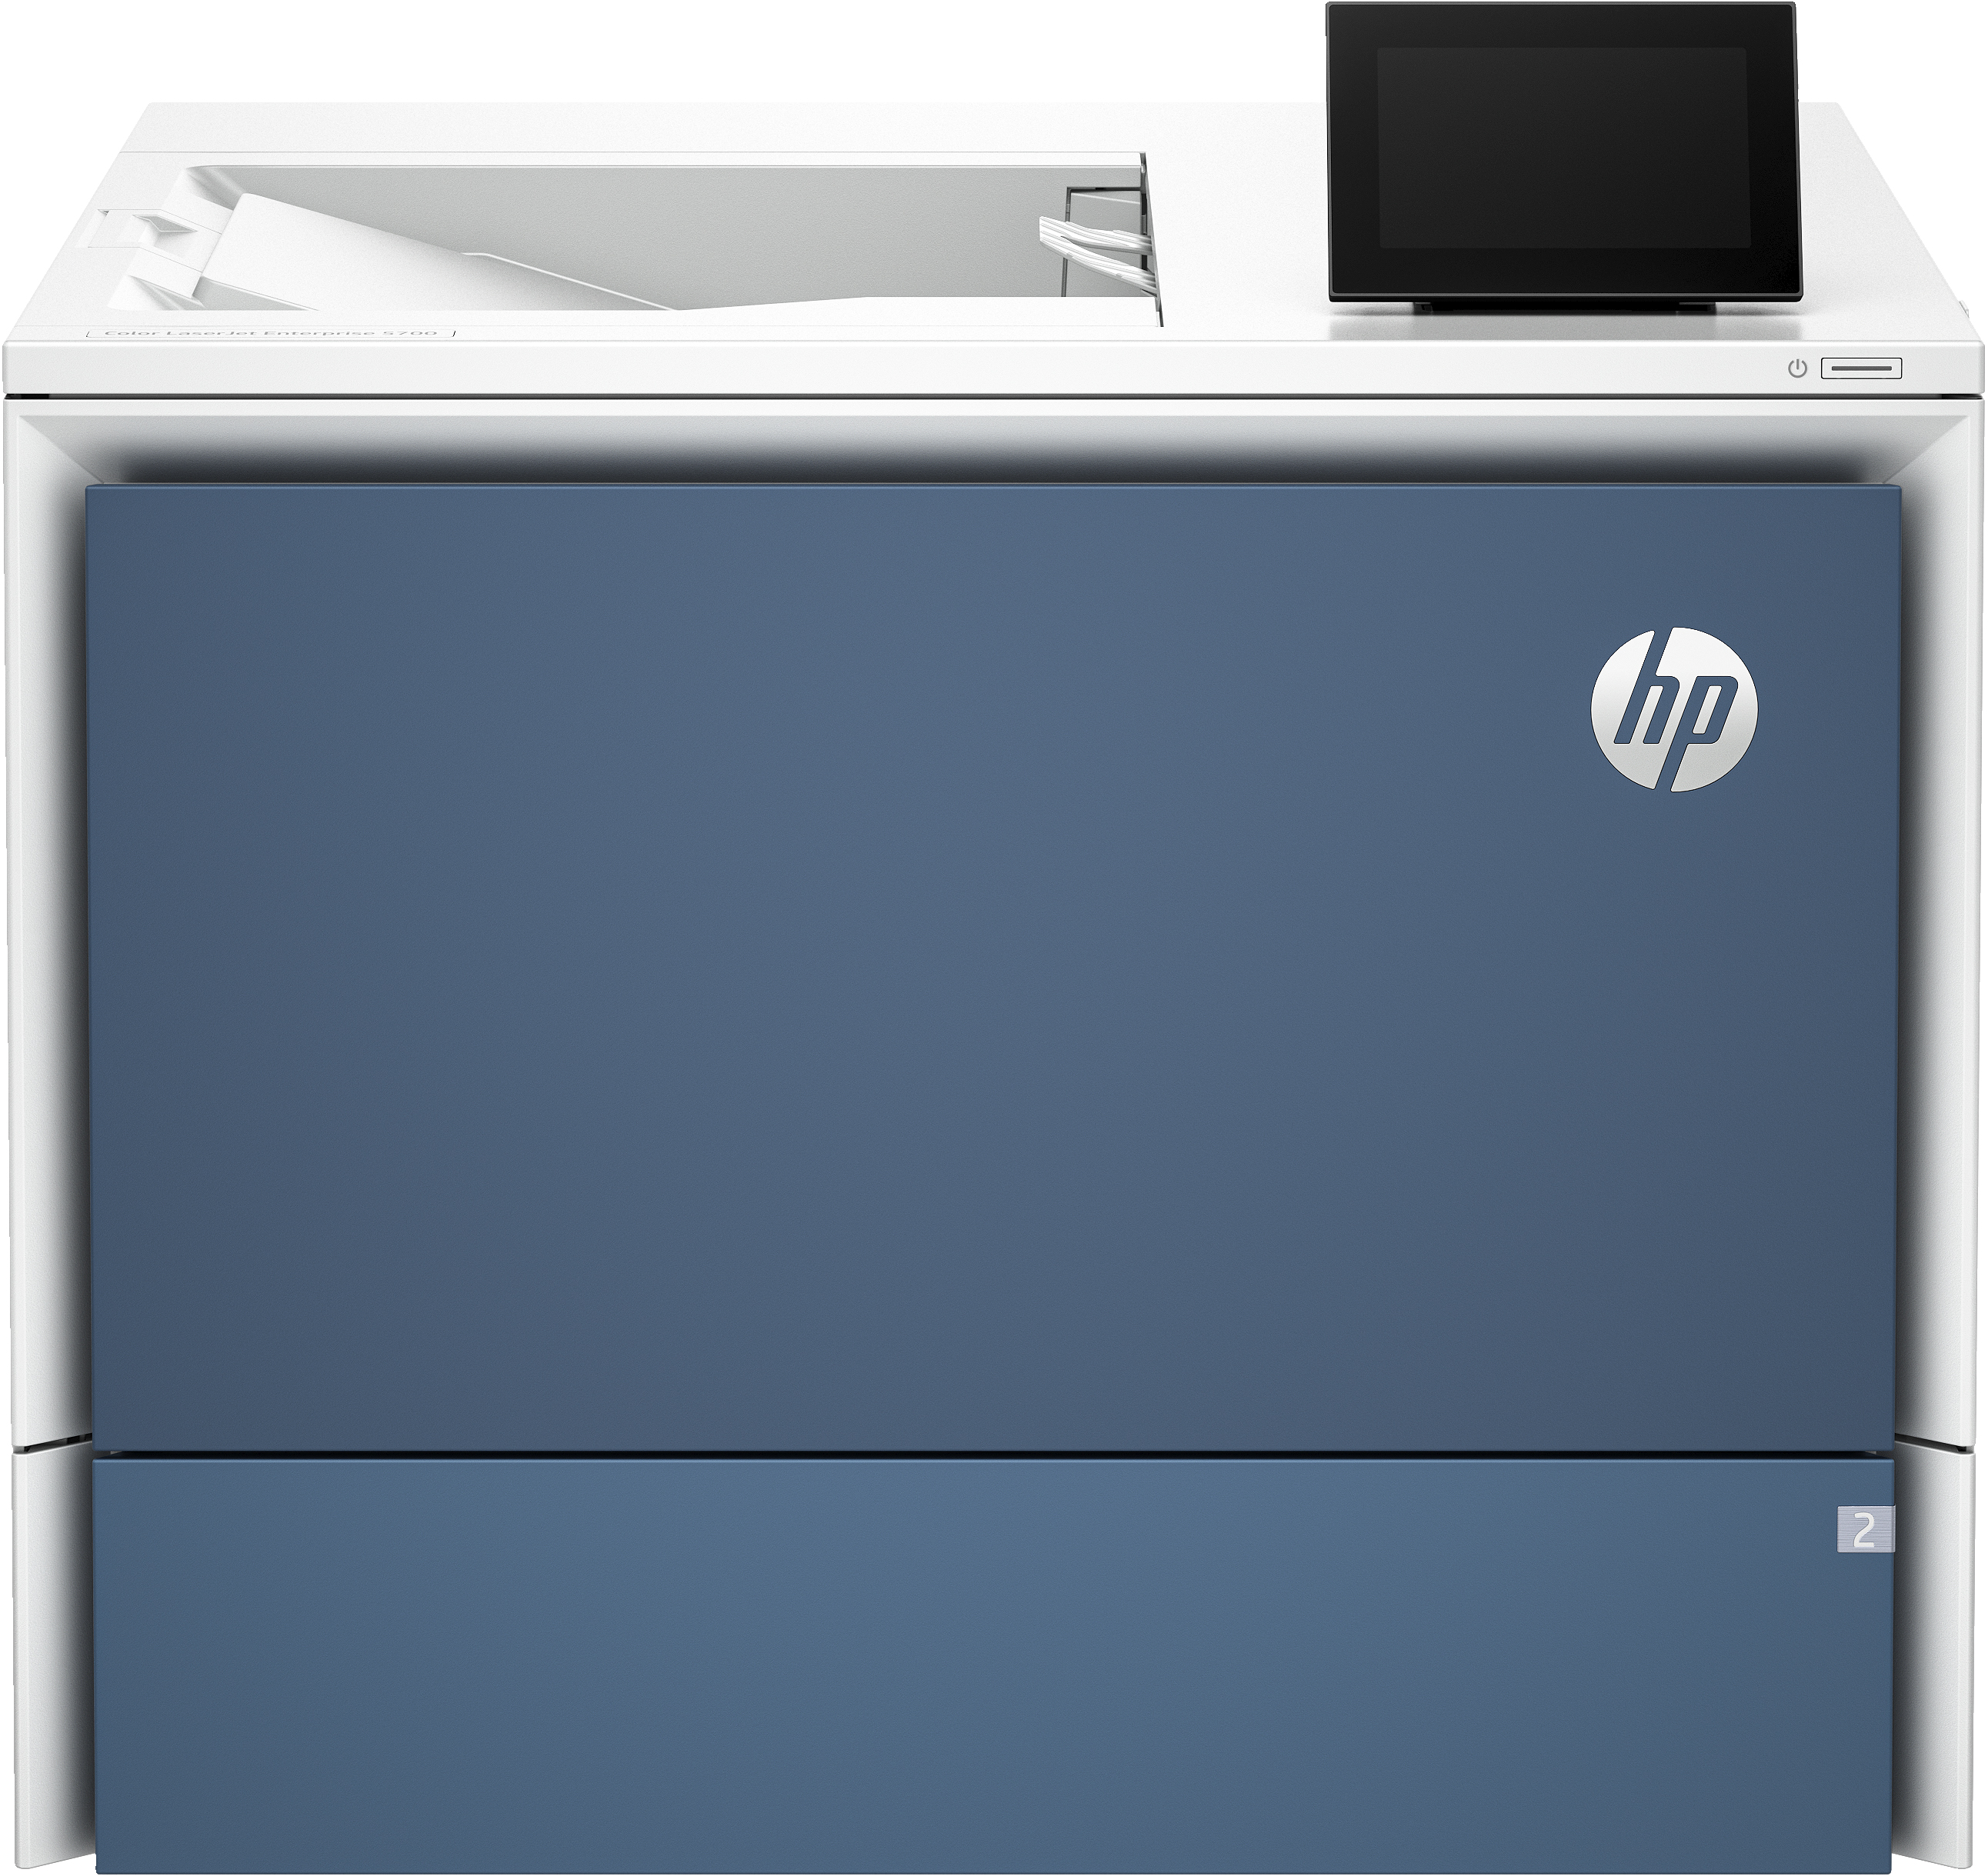 Image of HP Color LaserJet Enterprise Stampante 5700dn, Colore, Stampante per Stampa, porta unità flash USB anteriore; Vassoi ad alta capacità opzionali; touchscreen; Cartuccia TerraJet